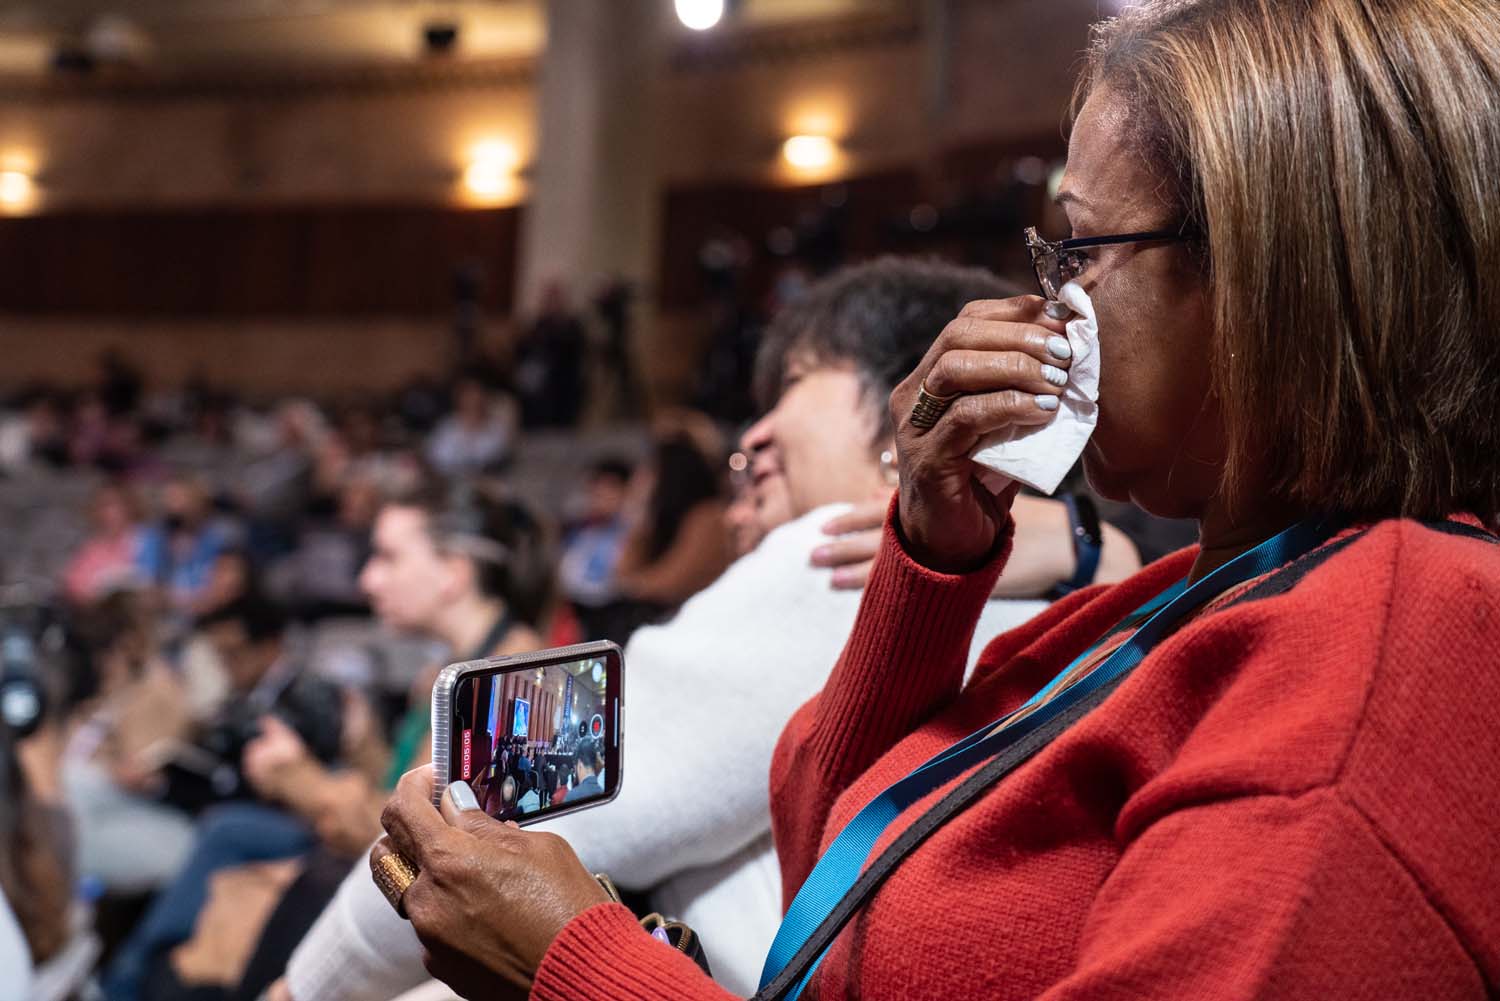 امرأة تجلس بين الجمهور ، تسجل السمع على هاتفها الخلوي وتمسح الدموع بمنديل ورقي.